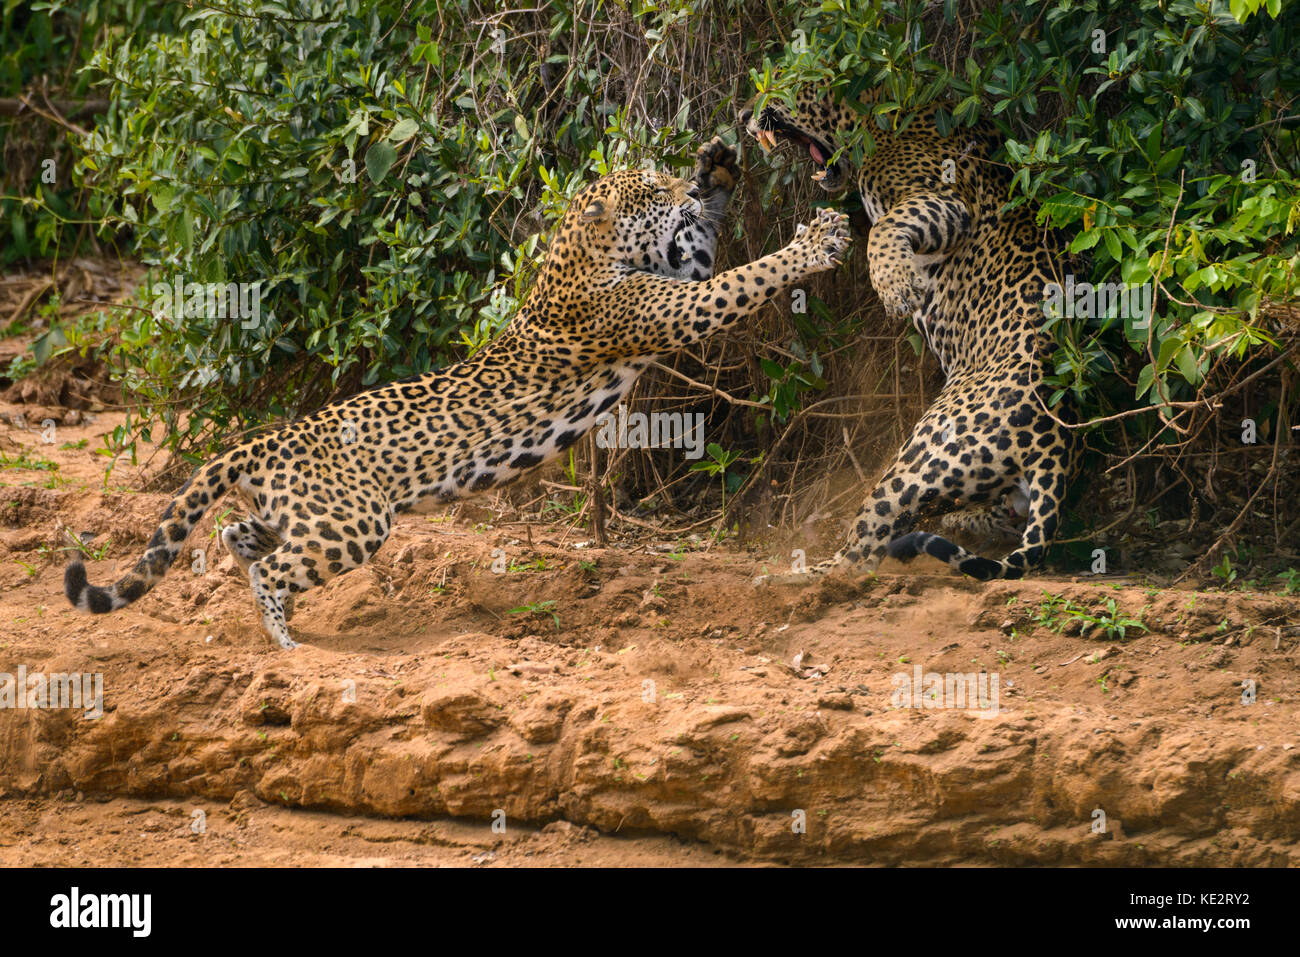 Dies ist Teil einer Sequenz von zwei sich in der Wildnis anpaarenden Jaguaren. Nord Pantanal, Brasilien. Stockfoto